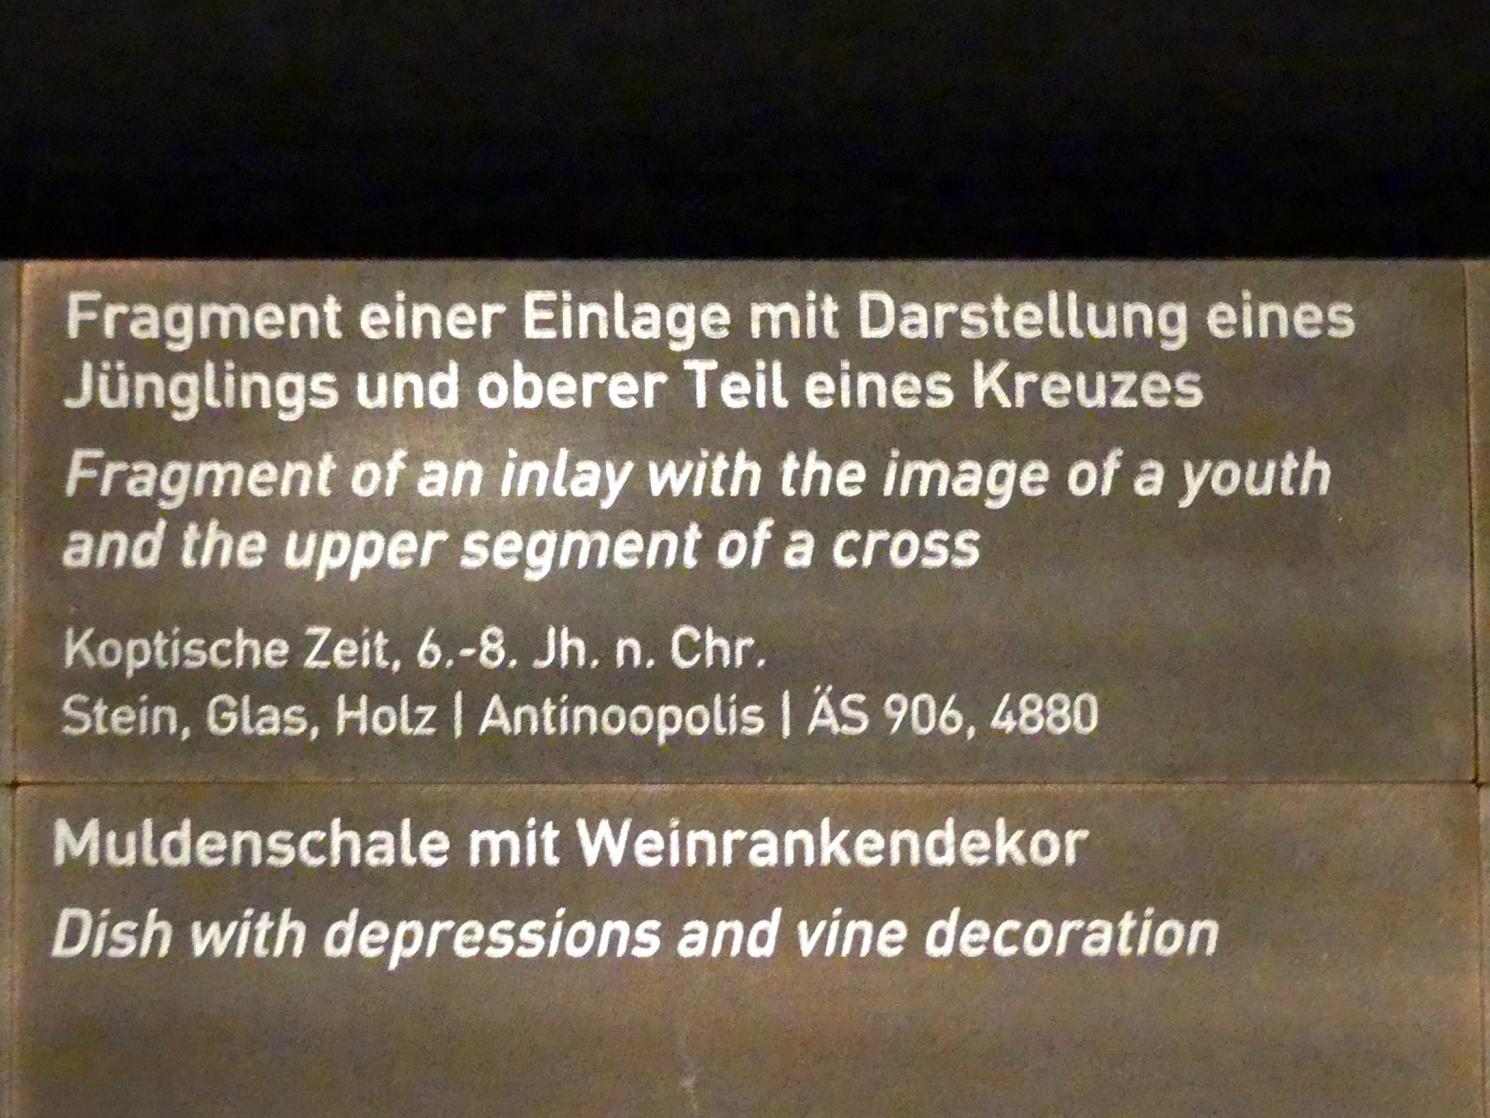 Fragment einer Einlage mit Darstellung eines Jünglings, Koptische Zeit, 200 - 800, 500 - 800, Bild 2/2